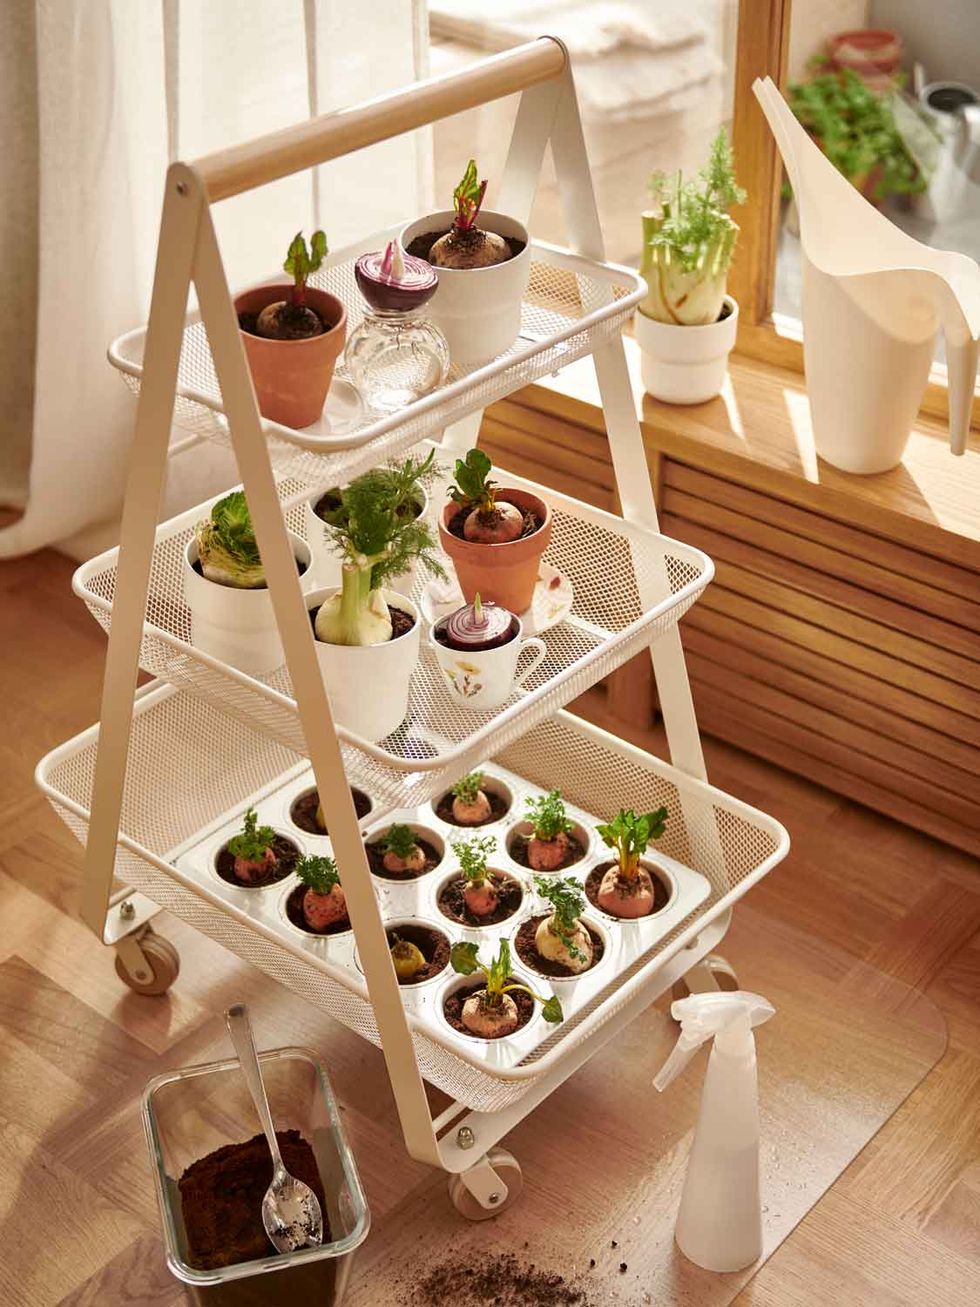 La novedad de IKEA que arrasará entre los amantes de las plantas: un mini  invernadero para que tengas en casa tu propio huerto urbano